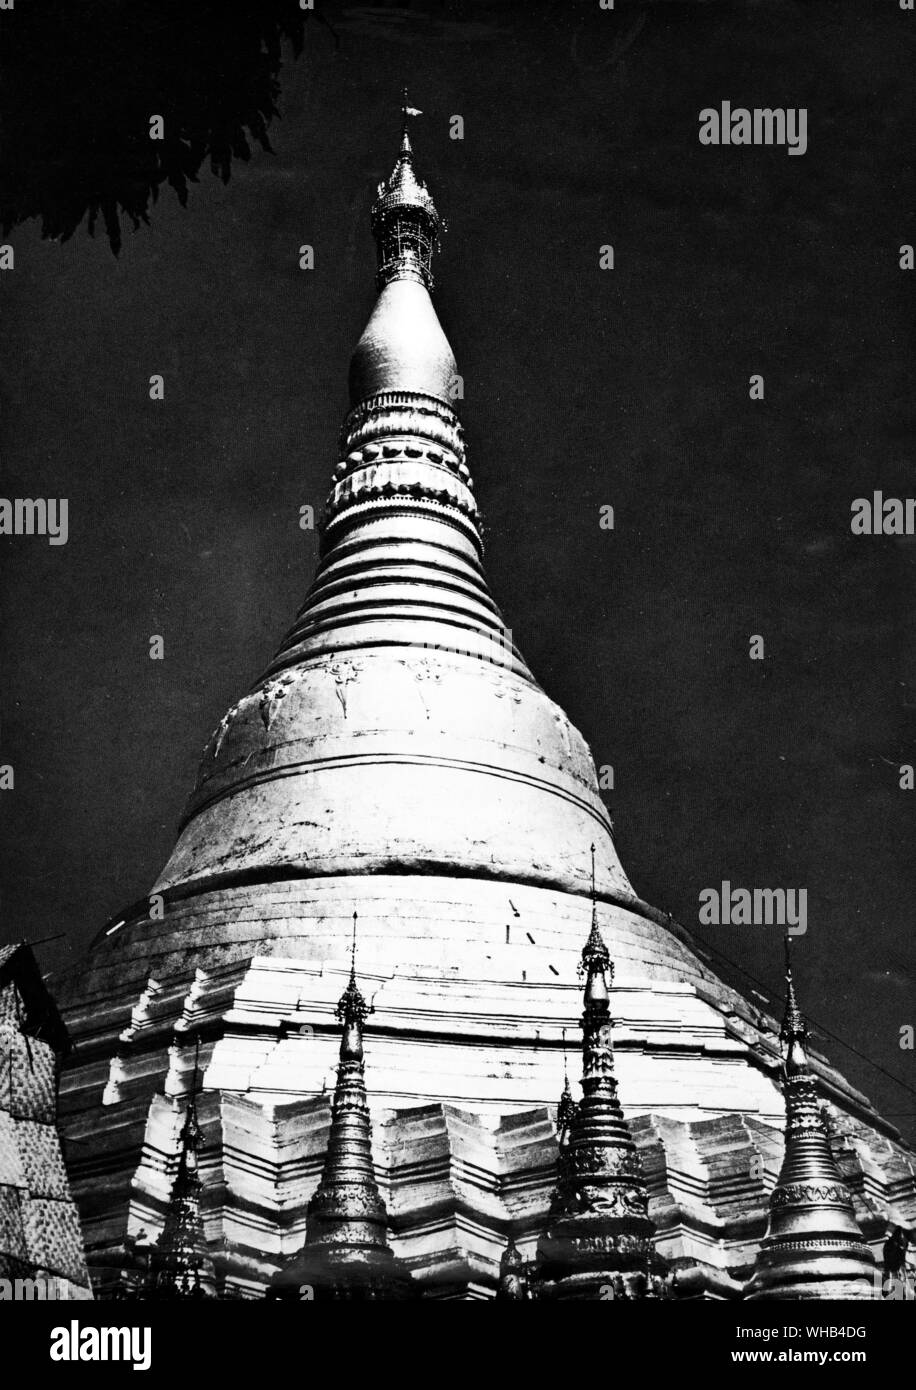 Il Drago Shawa Pagoda di Rangoon -. Il Majestic Shwedagon (Golden Dagon) Pagoda, Rangoon, Myanmar, domina lo skyline di Rangoon da ogni punto di vista. Per i buddisti birmani questo è quanto di più sacro di tutti i siti in Myanmar, uno che tutti aspirano birmano per visitare almeno una volta nella loro vita. La leggenda narra che la Shwedagon è stato costruito per ospitare 8 peli di Buddha. questi resto in una camera al di sotto di una lastra dorata sotto il grande stupa dorato (cupola). Il golden stupa sorge 98m e solido è in costruzione. Si ritiene che sia stato costruito dal Mon persone tra il sesto e il decimo Foto Stock